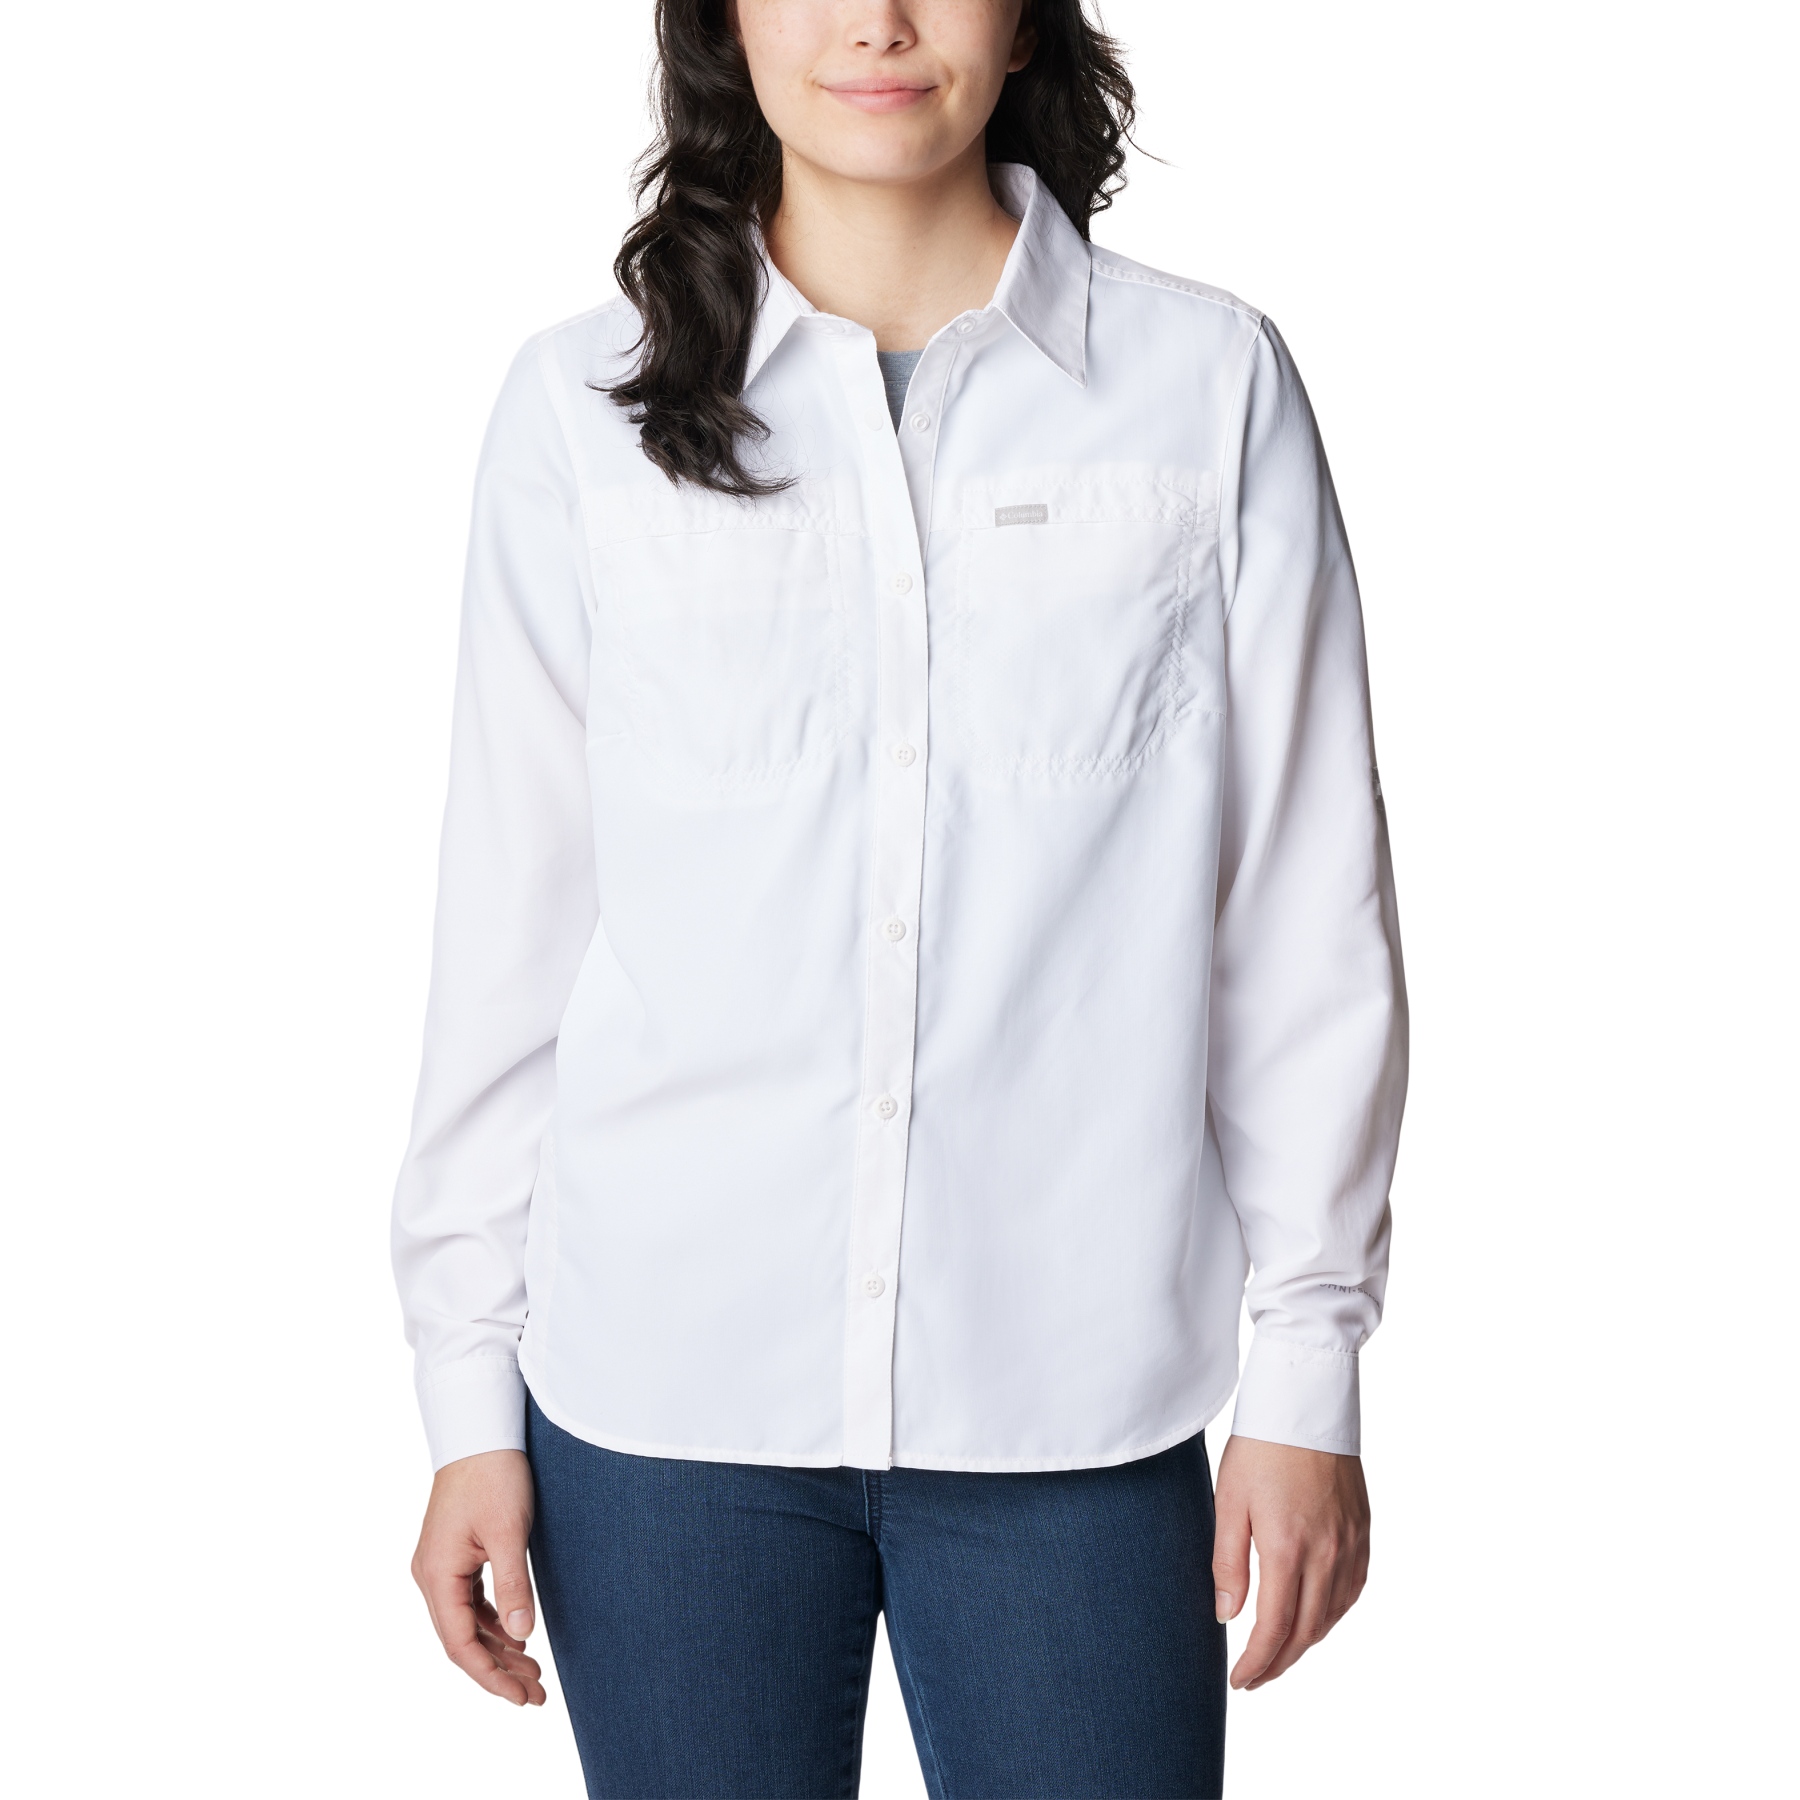 Produktbild von Columbia Silver Ridge EUR 3.0 Langarmhemd Damen - Weiß